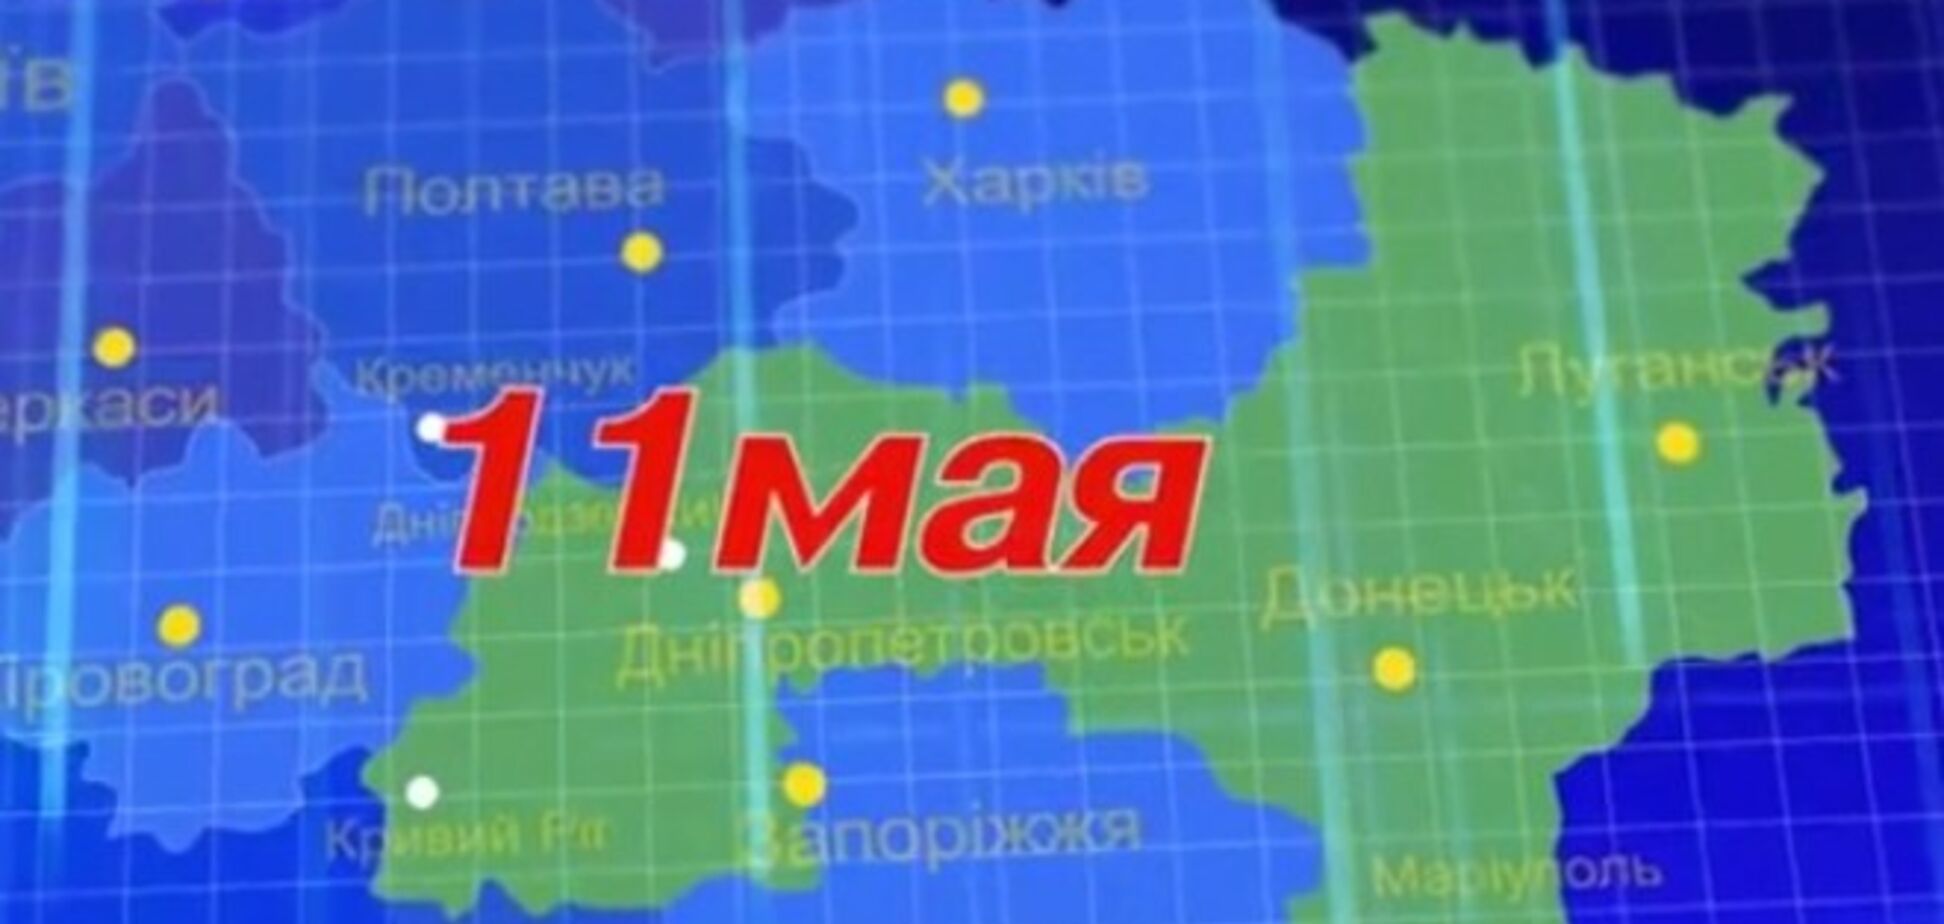 'Луганчане и дончане заслуживают лучшей жизни': в сети появился анонс референдума 11 мая